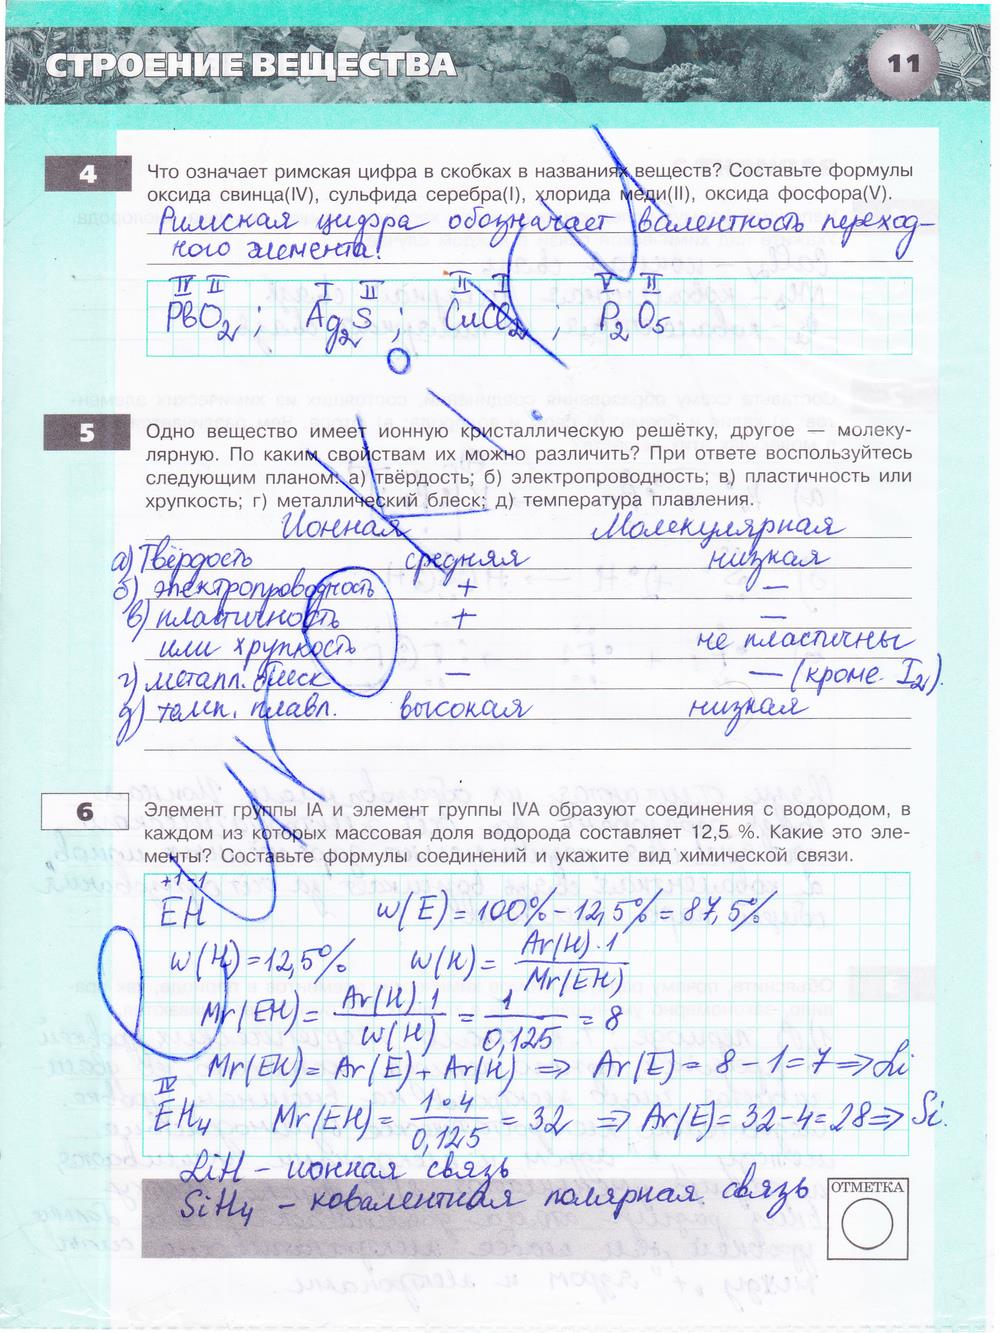 гдз 9 класс тетрадь-экзаменатор страница 11 химия Бобылева, Бирюлина